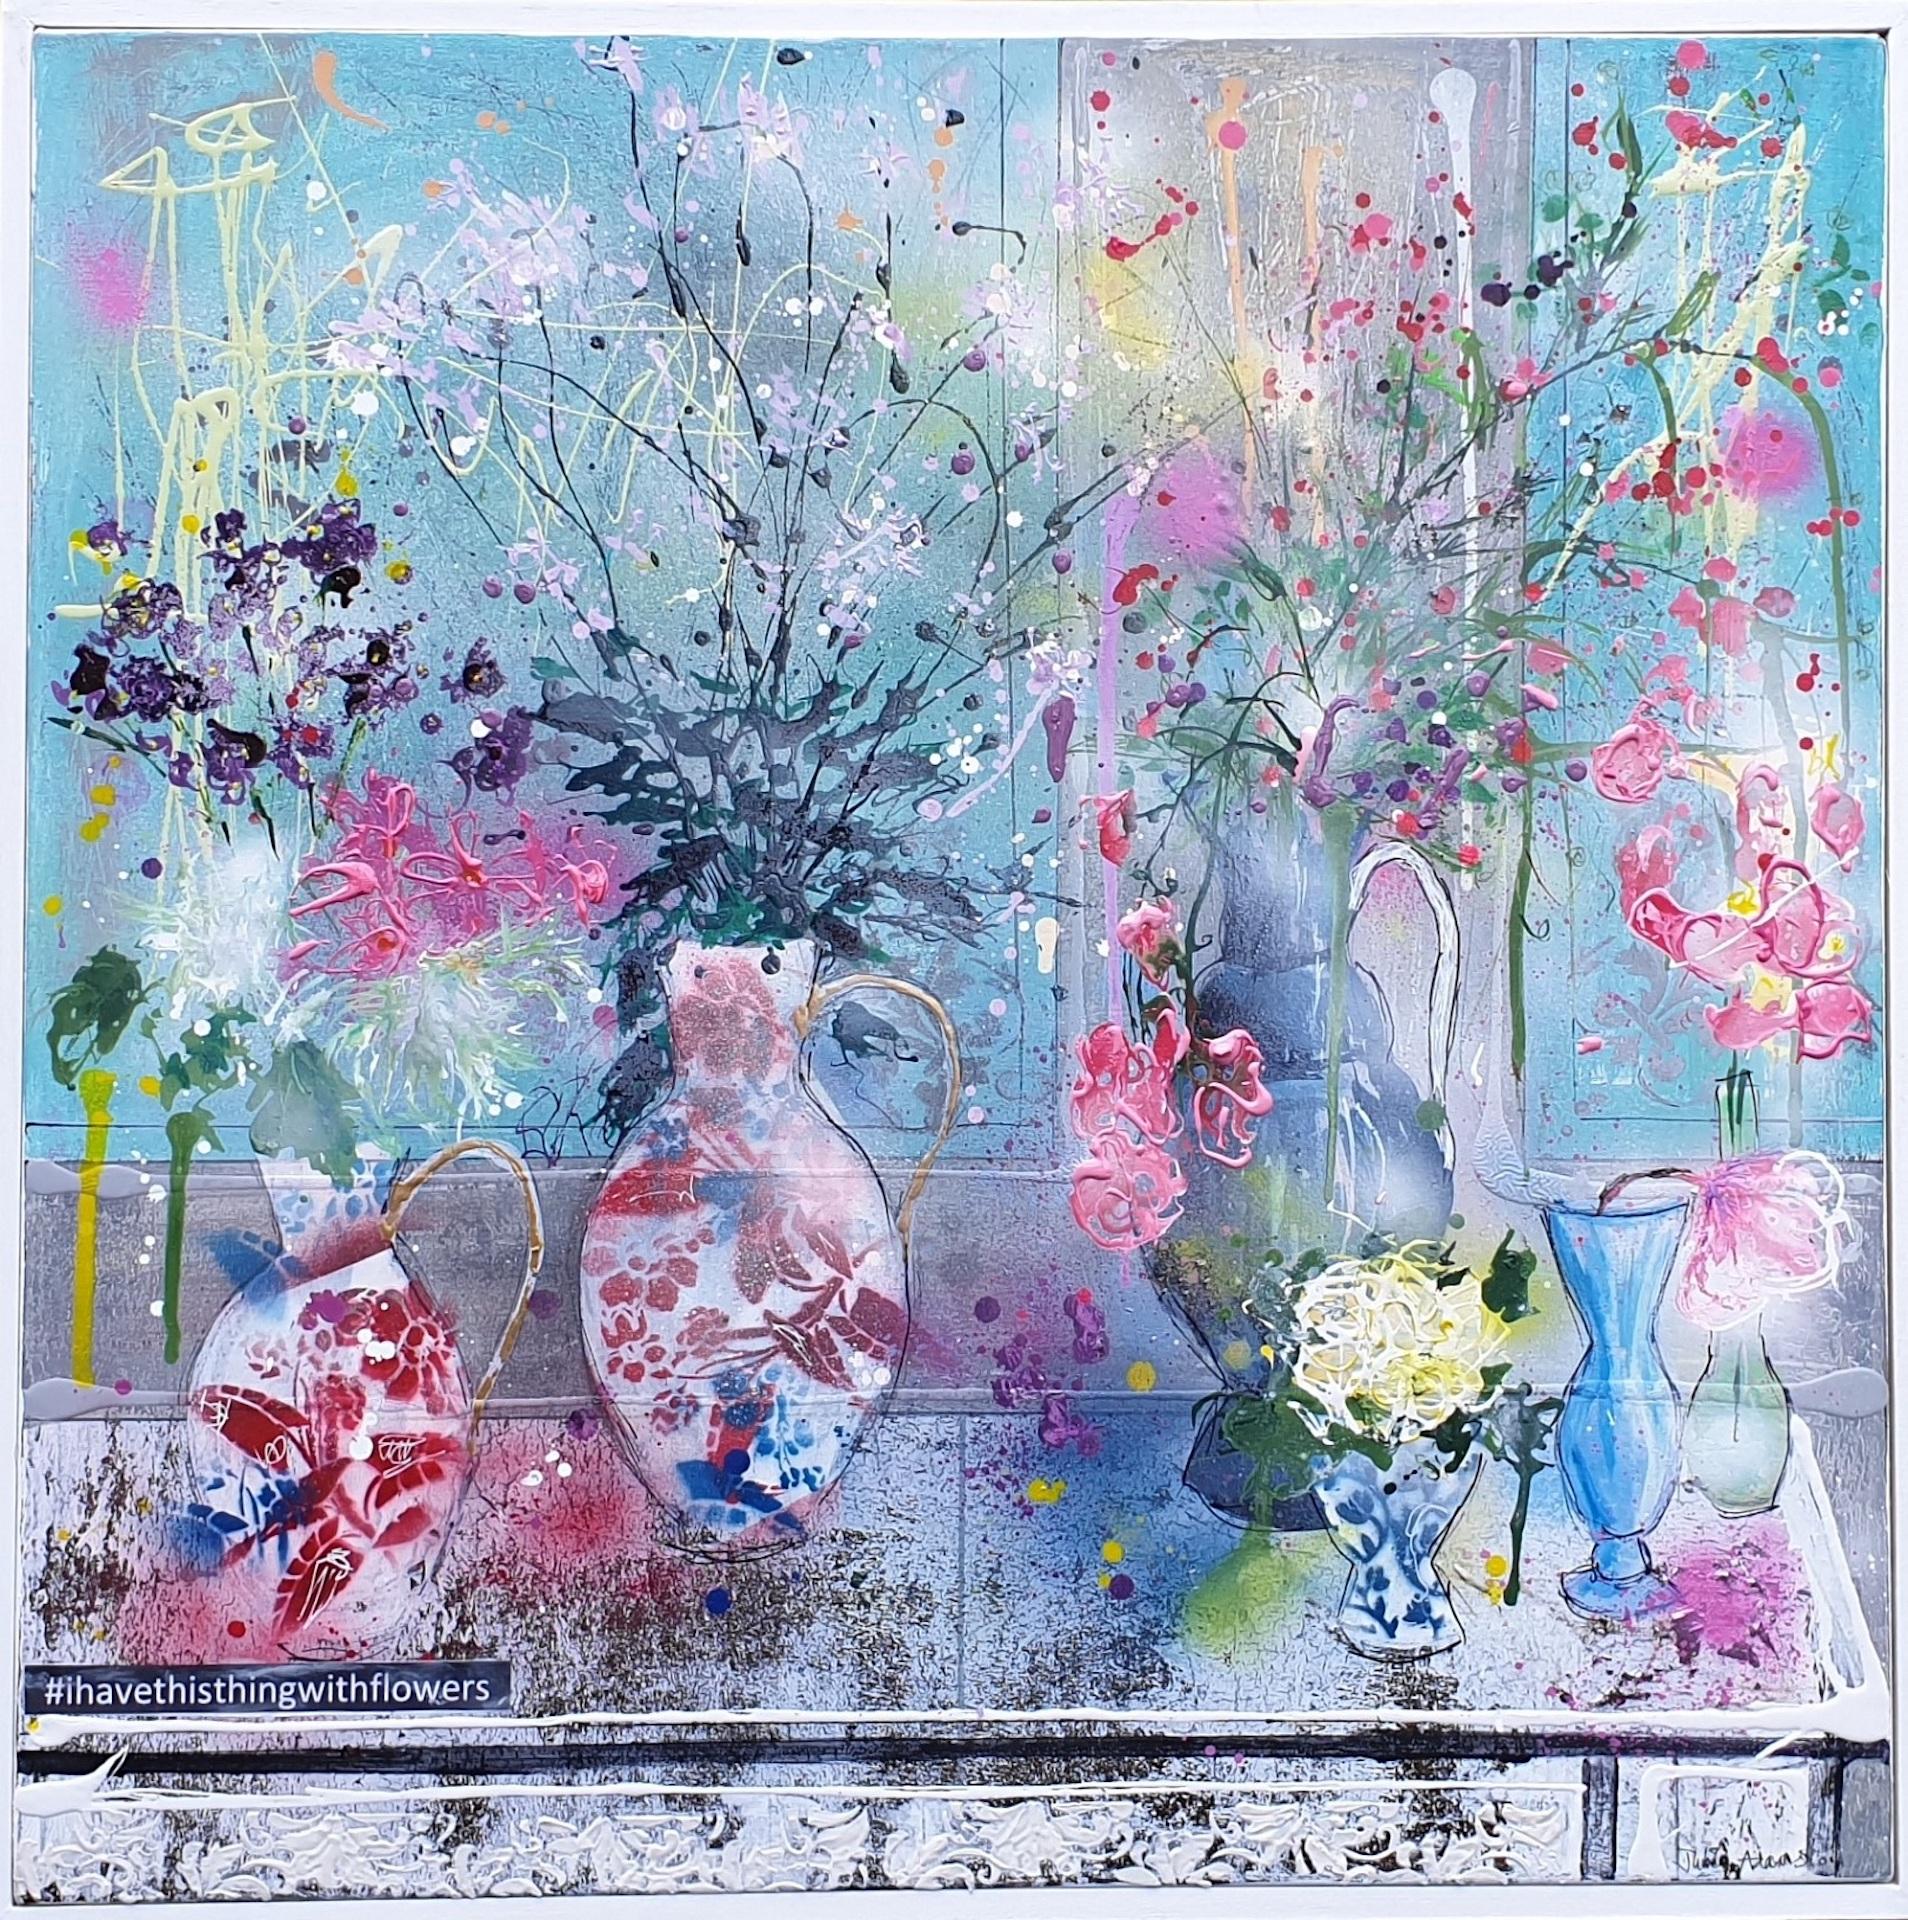 #ihavethisthingwithflowers von Julia Adams ist eine zeitgenössische Mixed-Media-Kunst